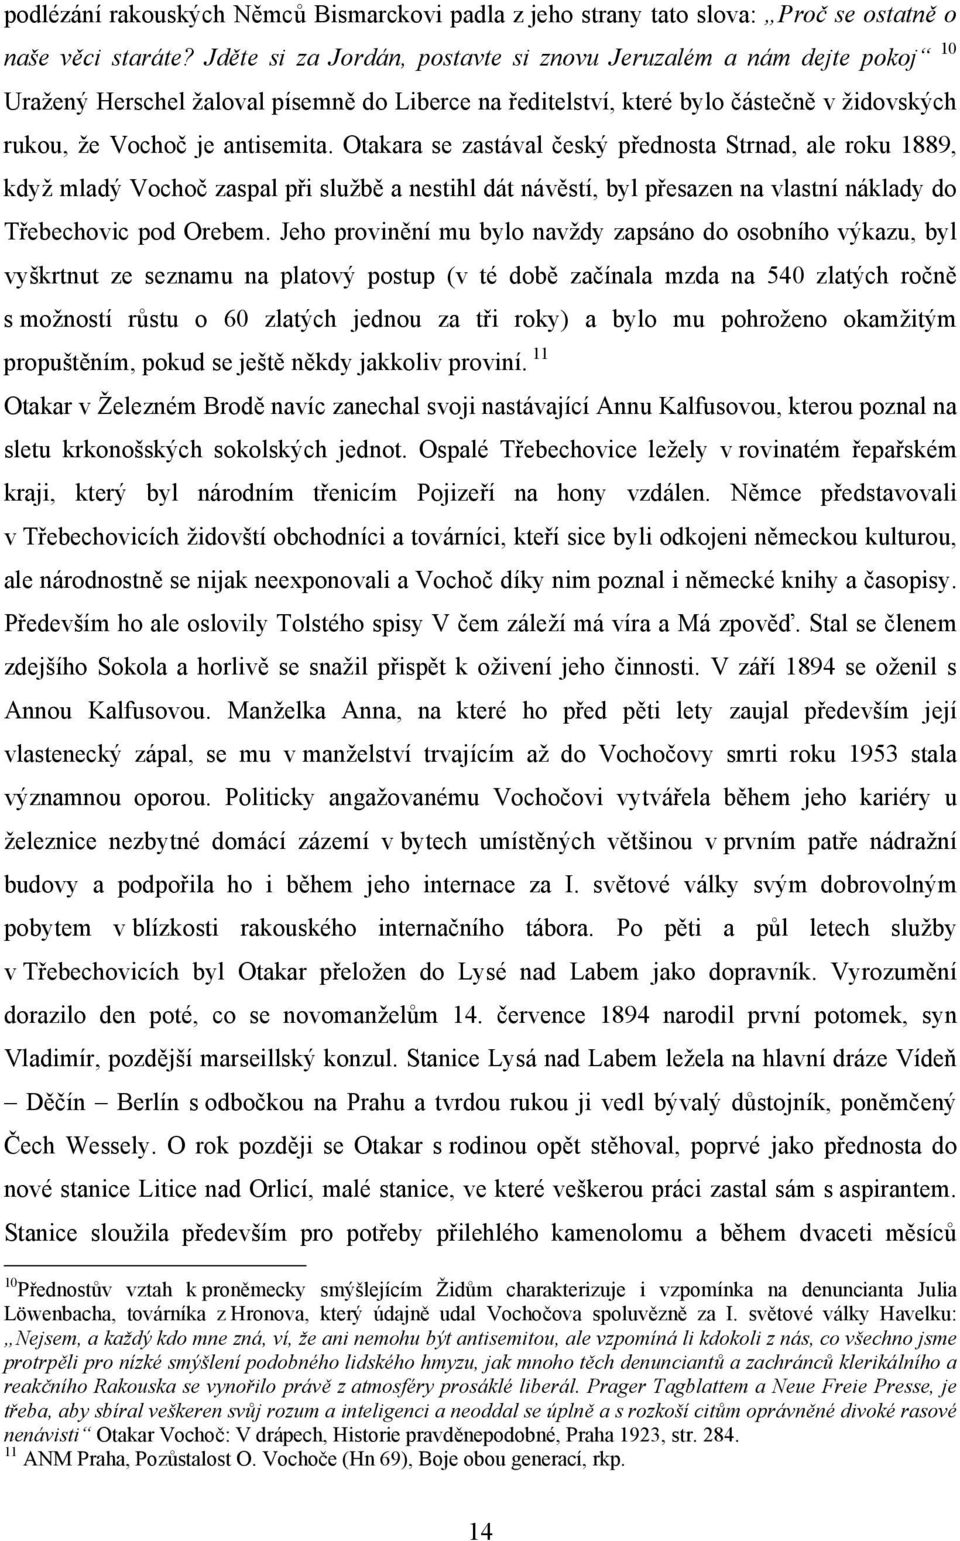 Otakara se zastával český přednosta Strnad, ale roku 1889, když mladý Vochoč zaspal při službě a nestihl dát návěstí, byl přesazen na vlastní náklady do Třebechovic pod Orebem.